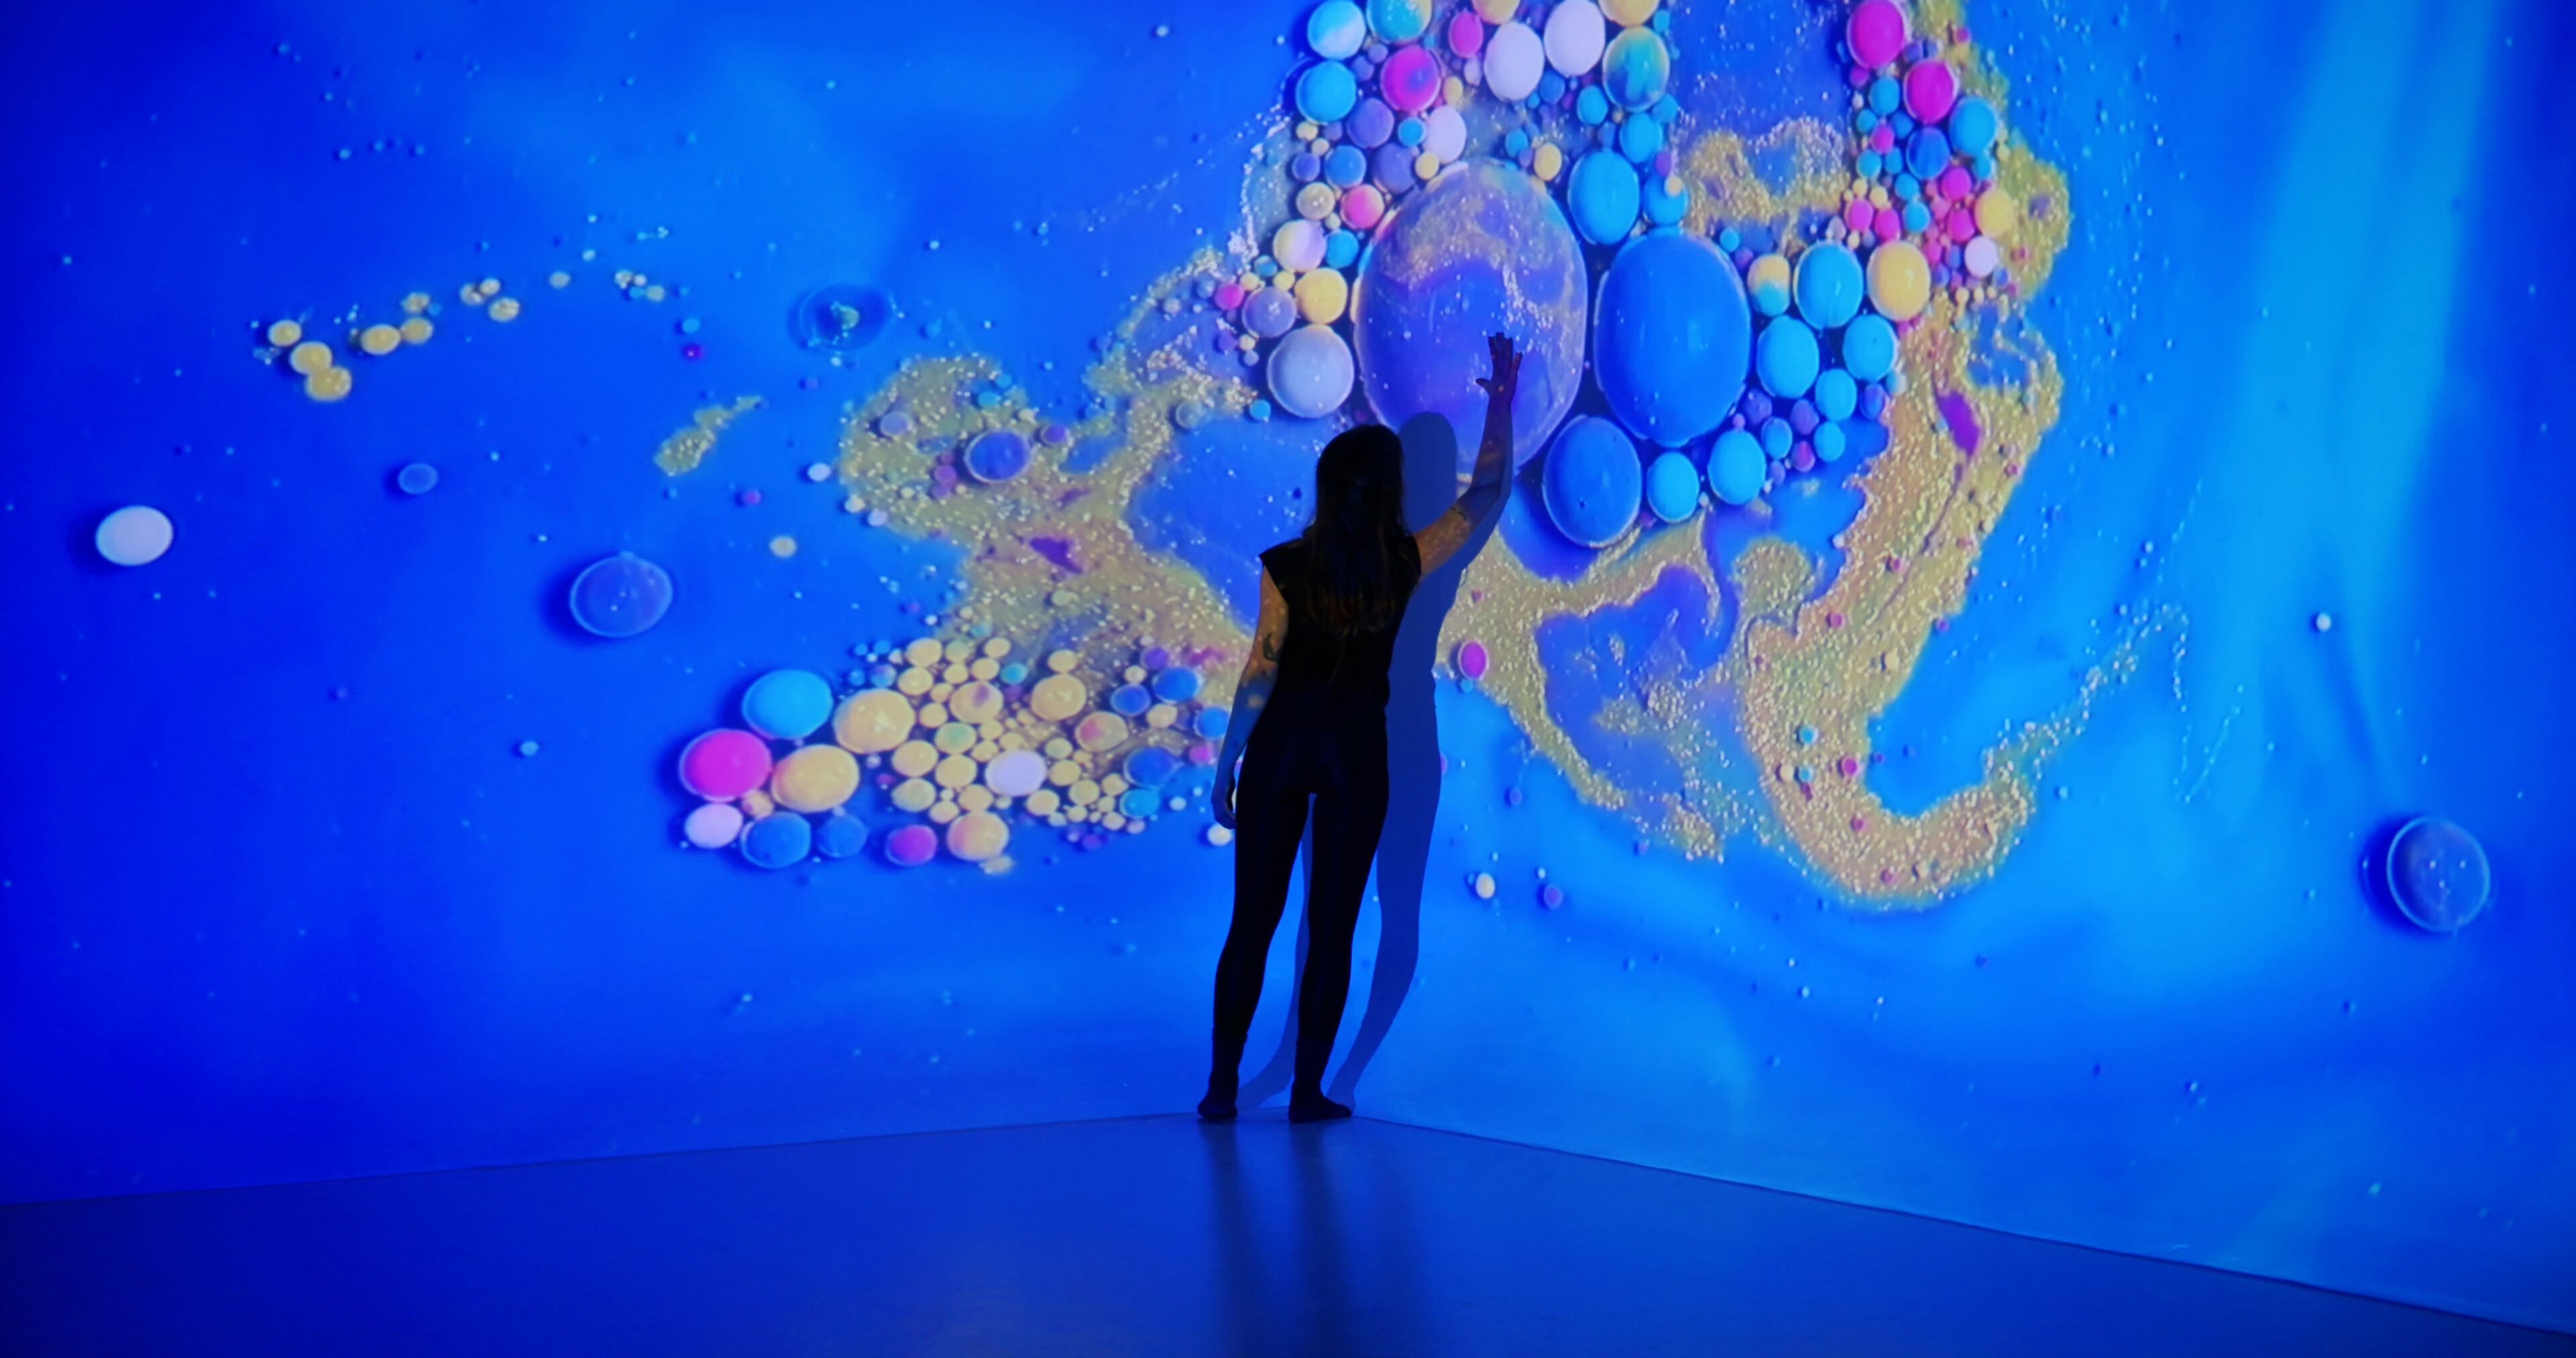 Una persona está silueteada contra una vibrante exposición de arte interactivo con burbujas iridiscentes y dinámicas en un fondo azul intenso.